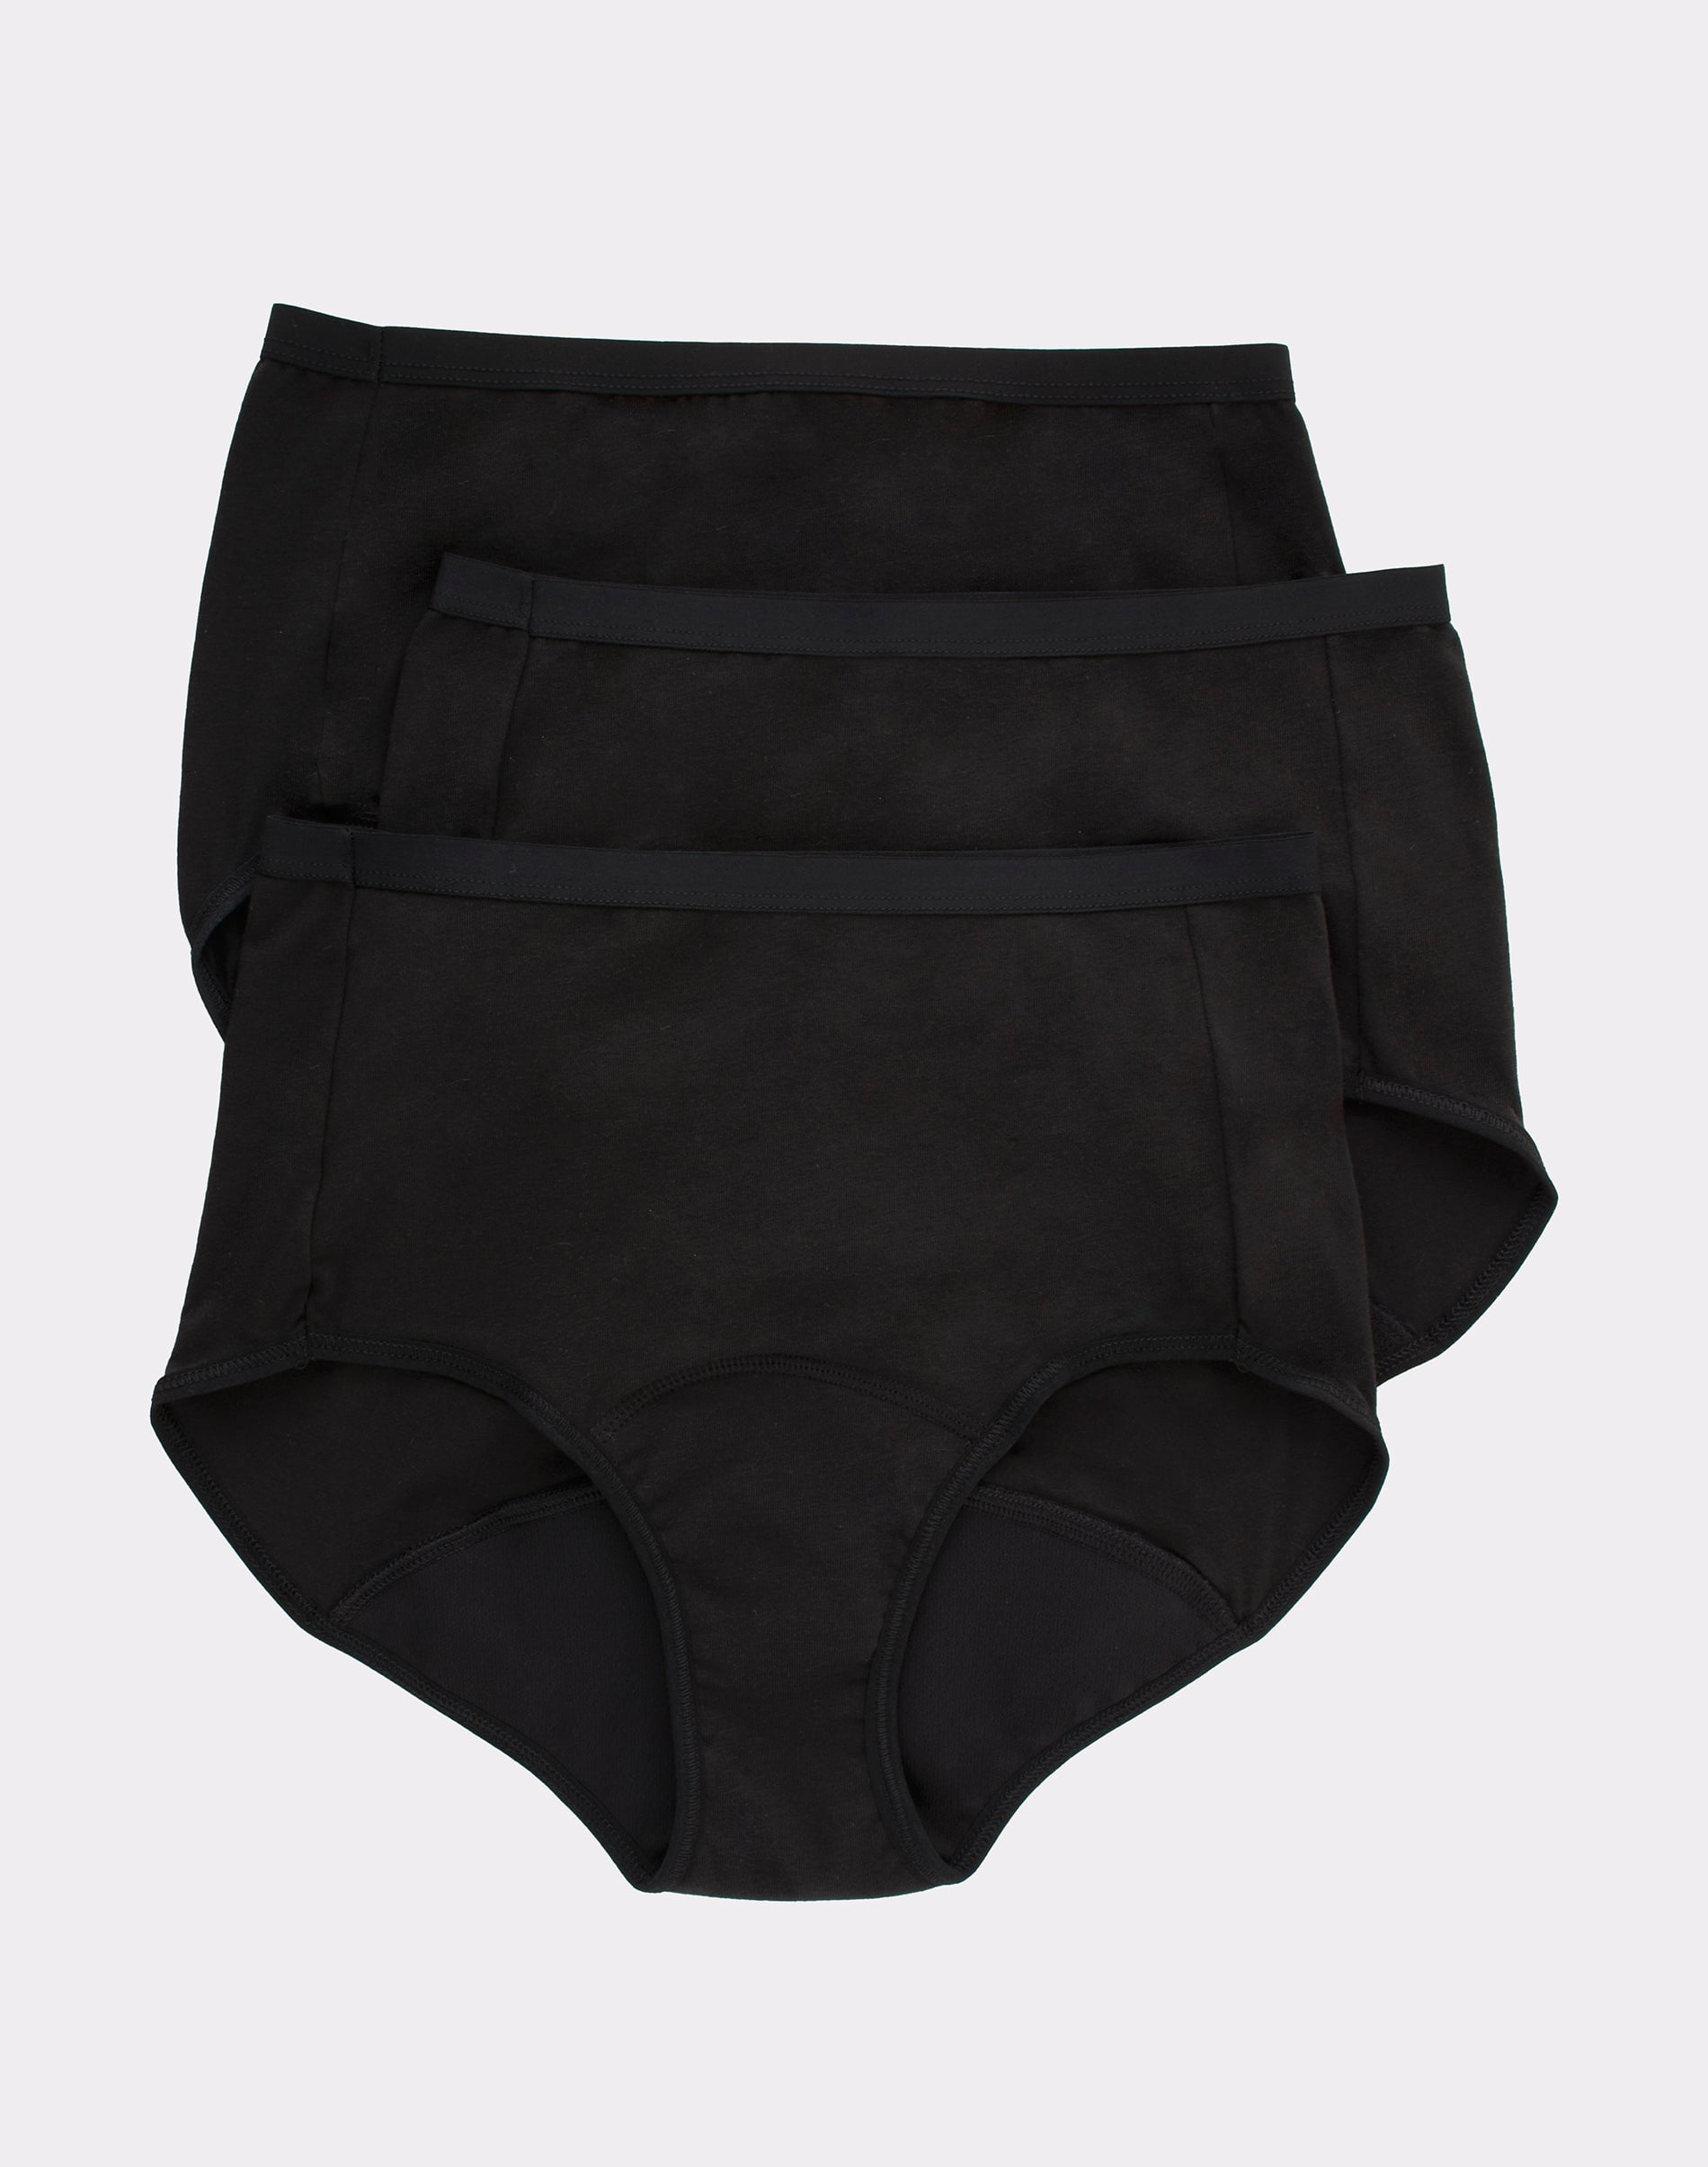 Hanes Comfort, Period. Briefs Underwear, Moderate Leaks, Black, 3-Pack 6  Women's 